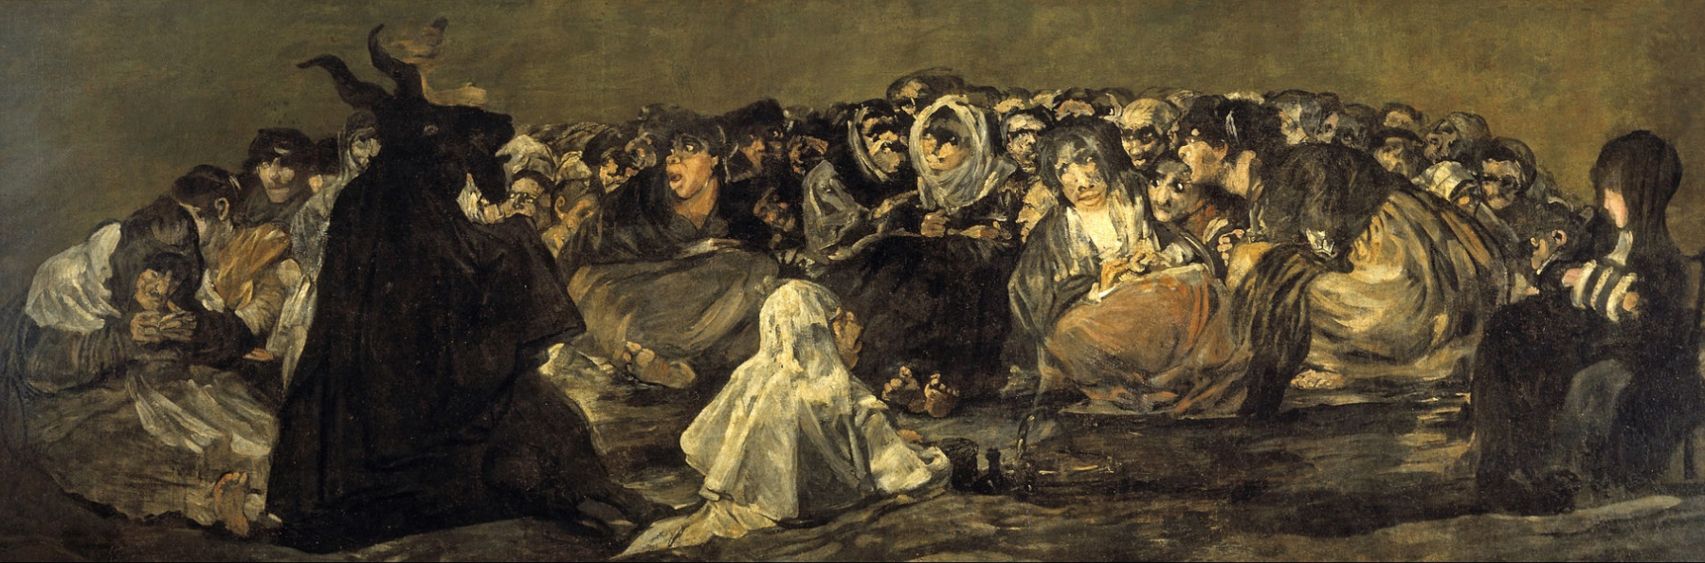 El Aquelarre de Goya, una de sus pinturas negras a las que podrán acceder los jugadores de Animal Crossing